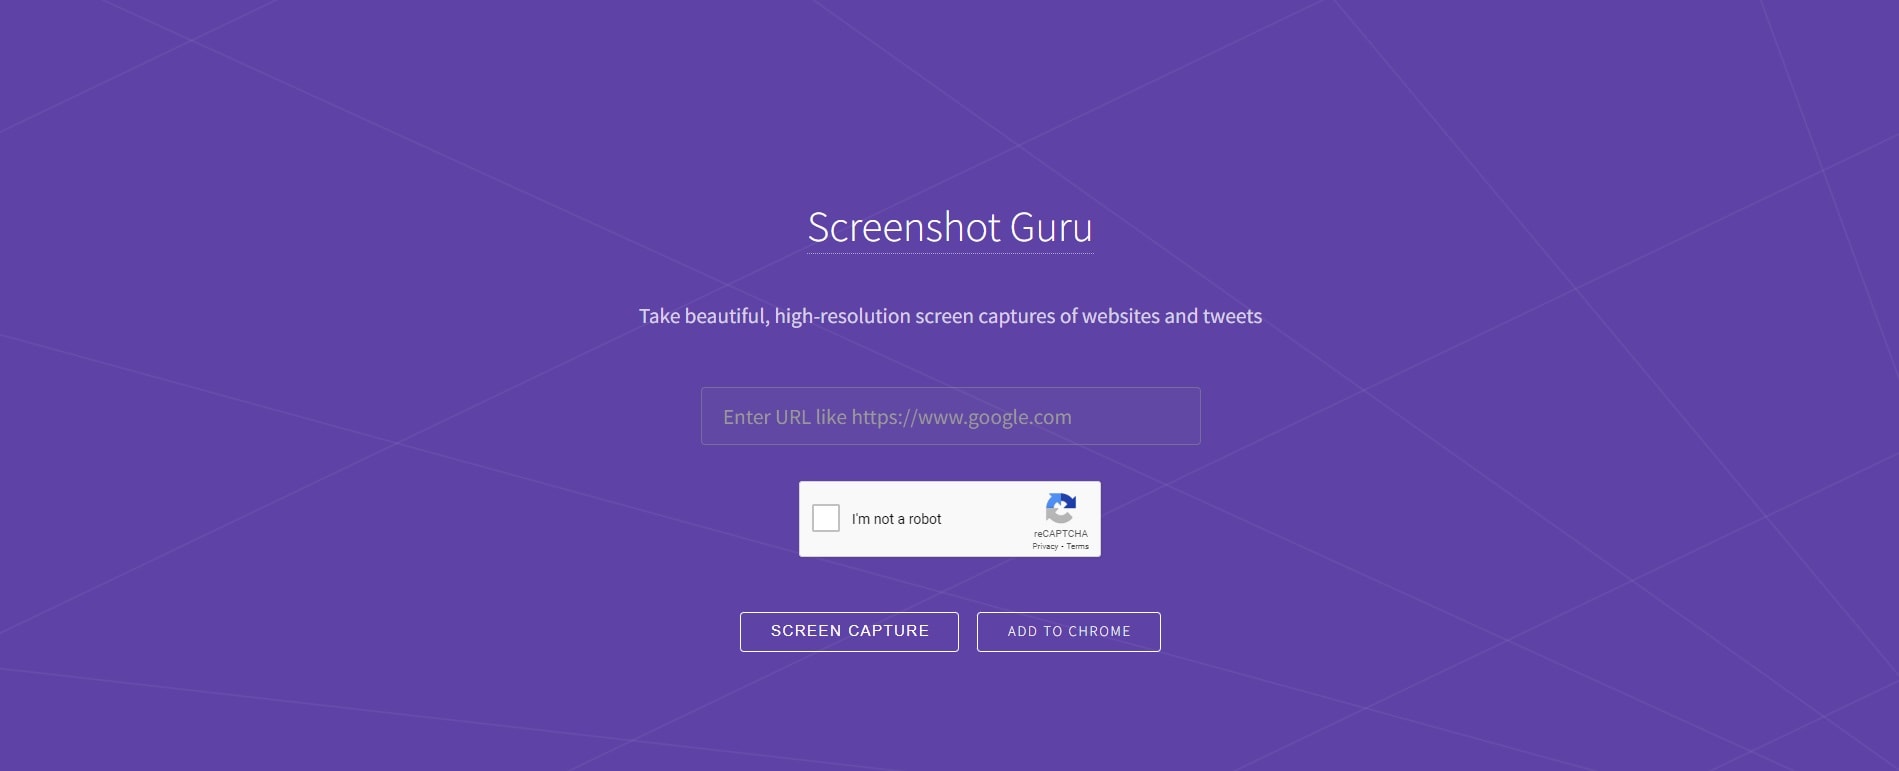 scrolling mac screenshots with screenshot guru